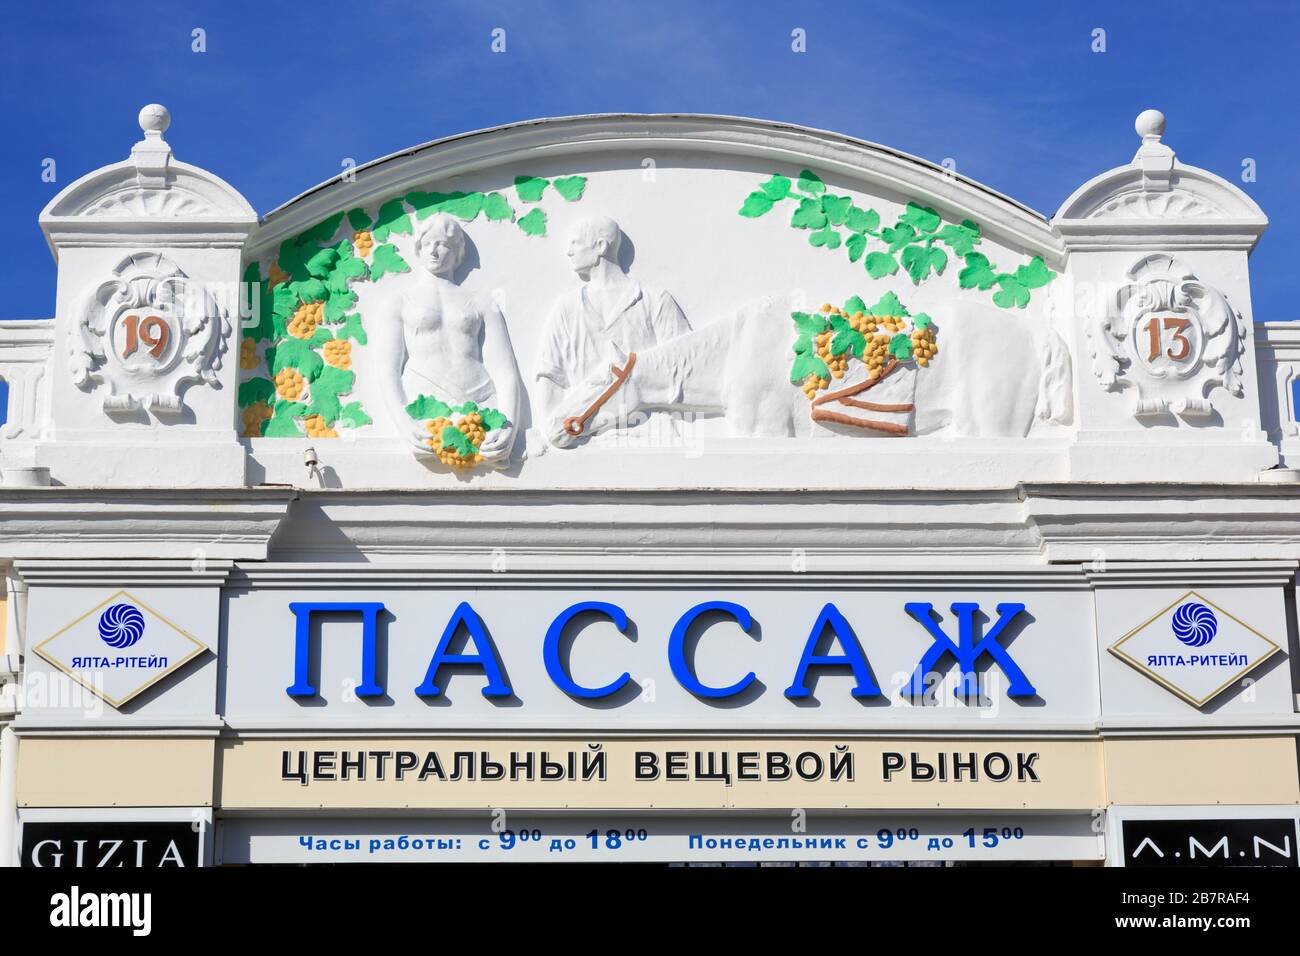 Magasins de la vieille ville, Yalta, Crimée, Ukraine, Europe orientale Banque D'Images